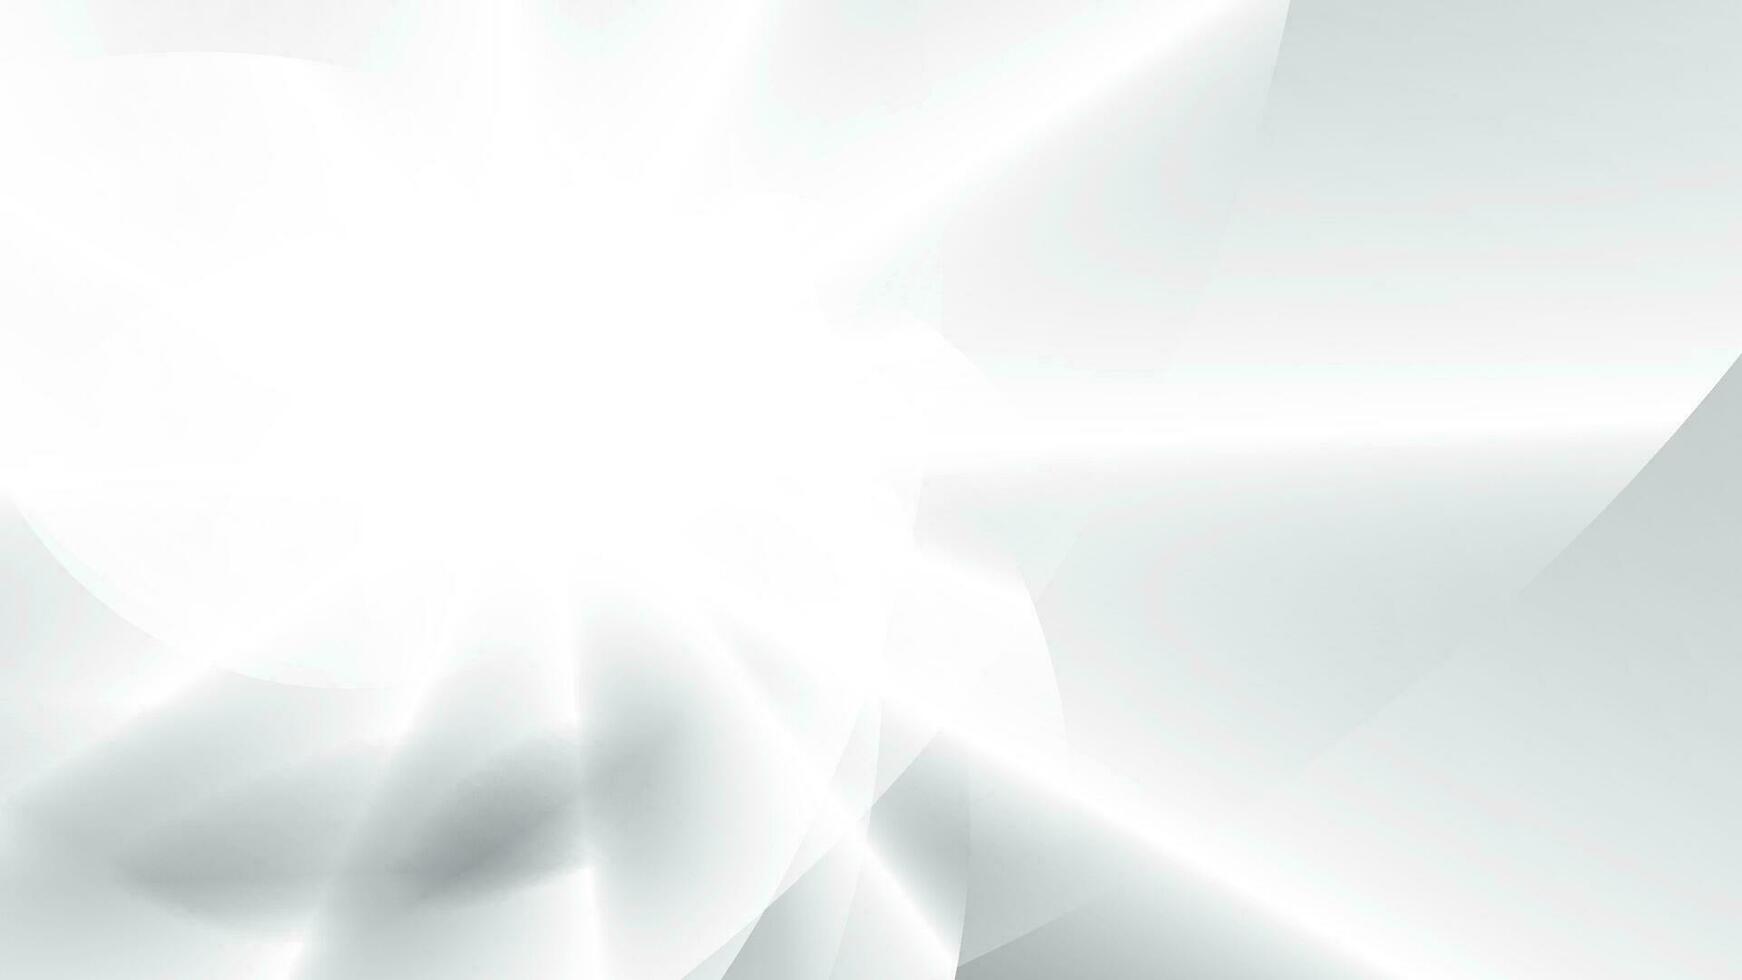 abstrakt vit och grå Färg bakgrund med geometrisk runda kurva. vektor illustration.